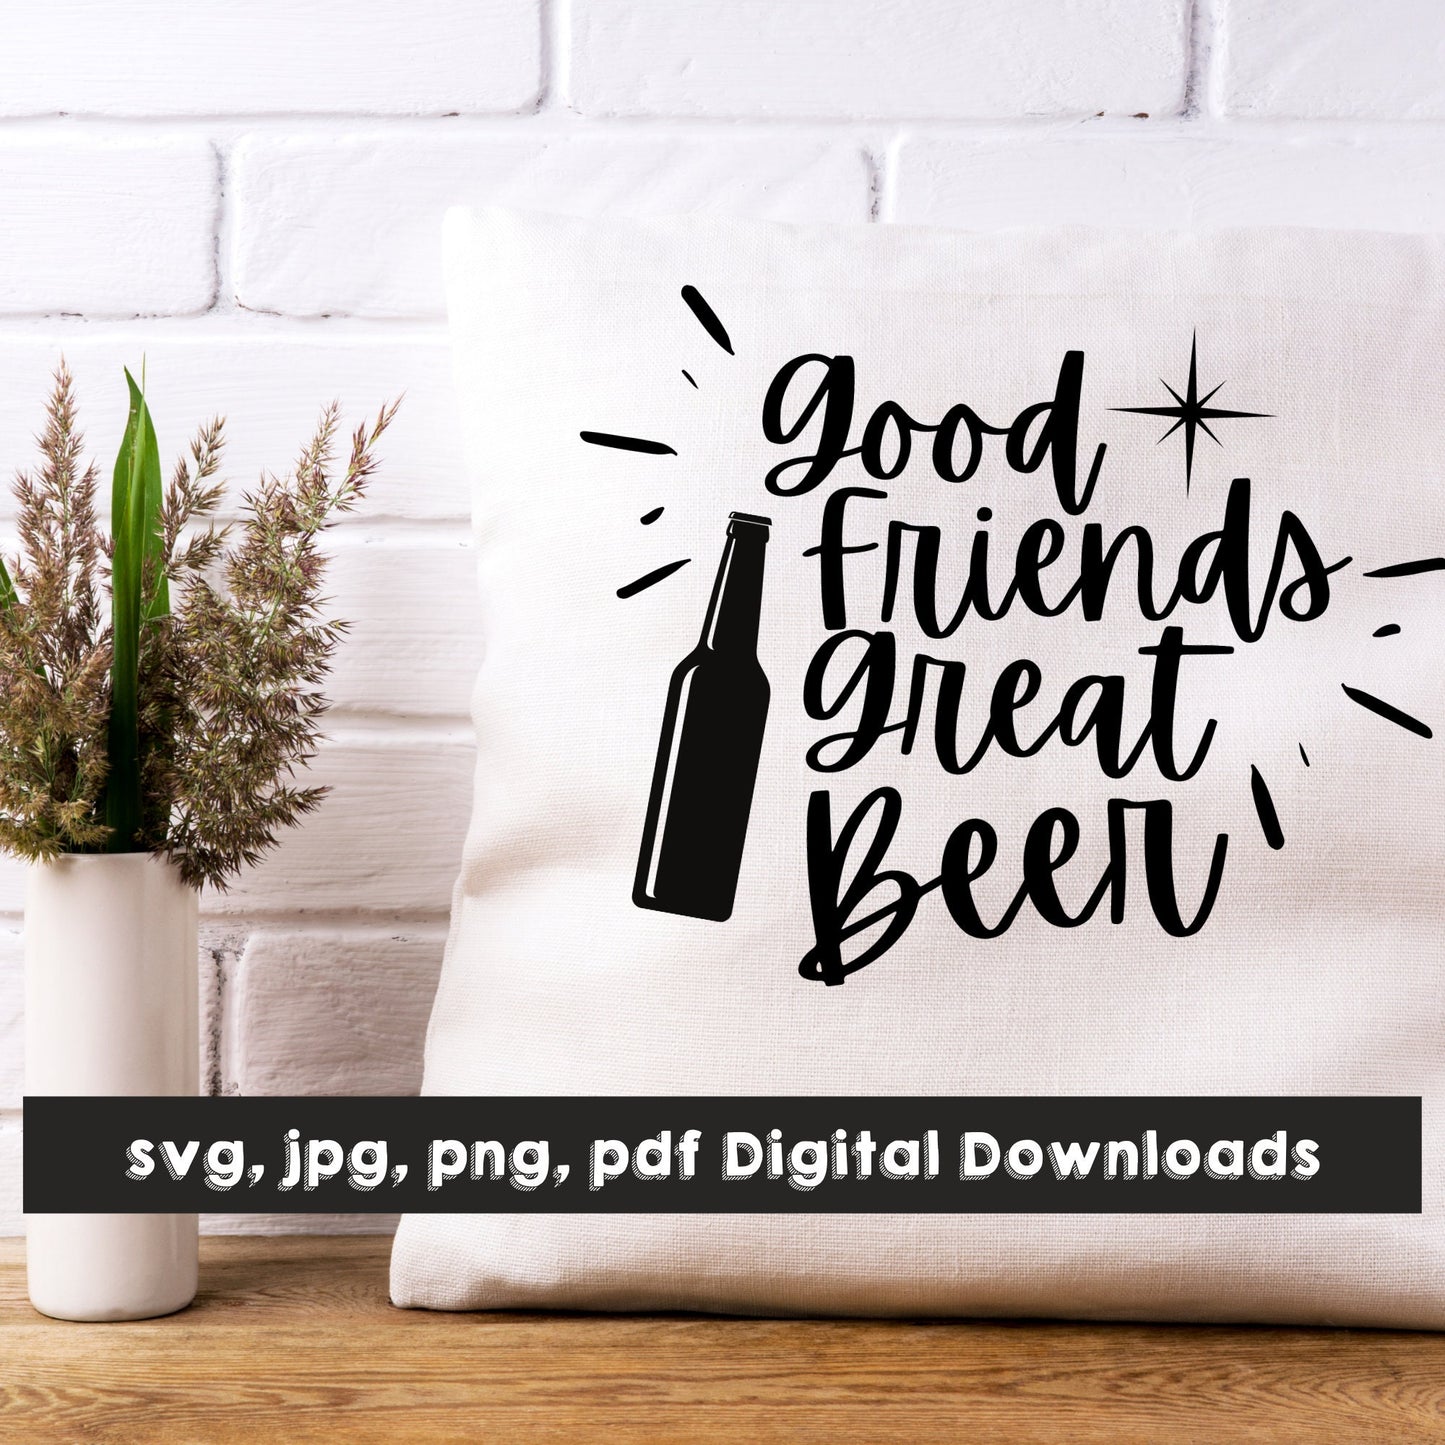 Good Friends Great Beer